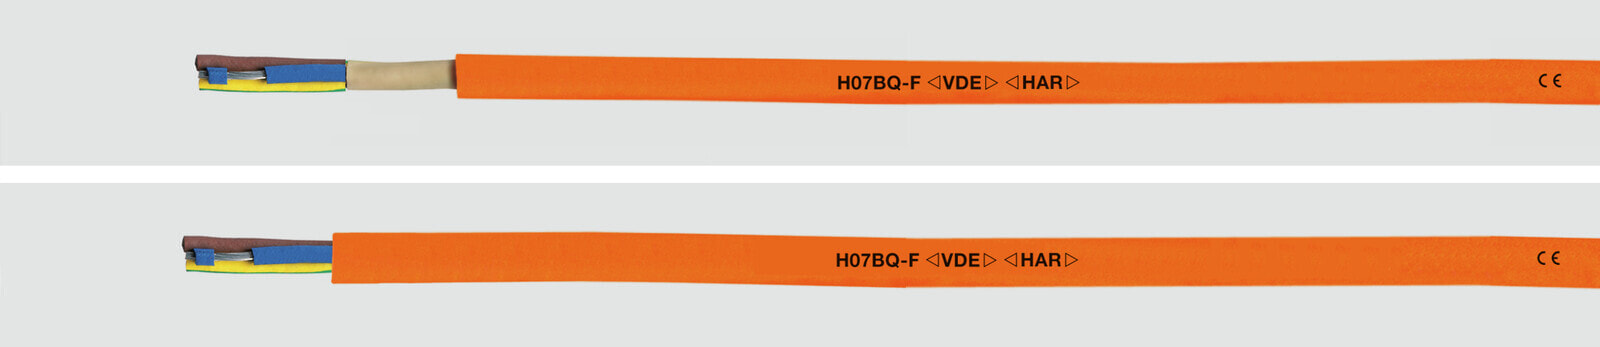 Helukabel 22053 - Low voltage cable - Orange - Cooper - 0.75 mm² - 36 kg/km - -40 - 80 °C